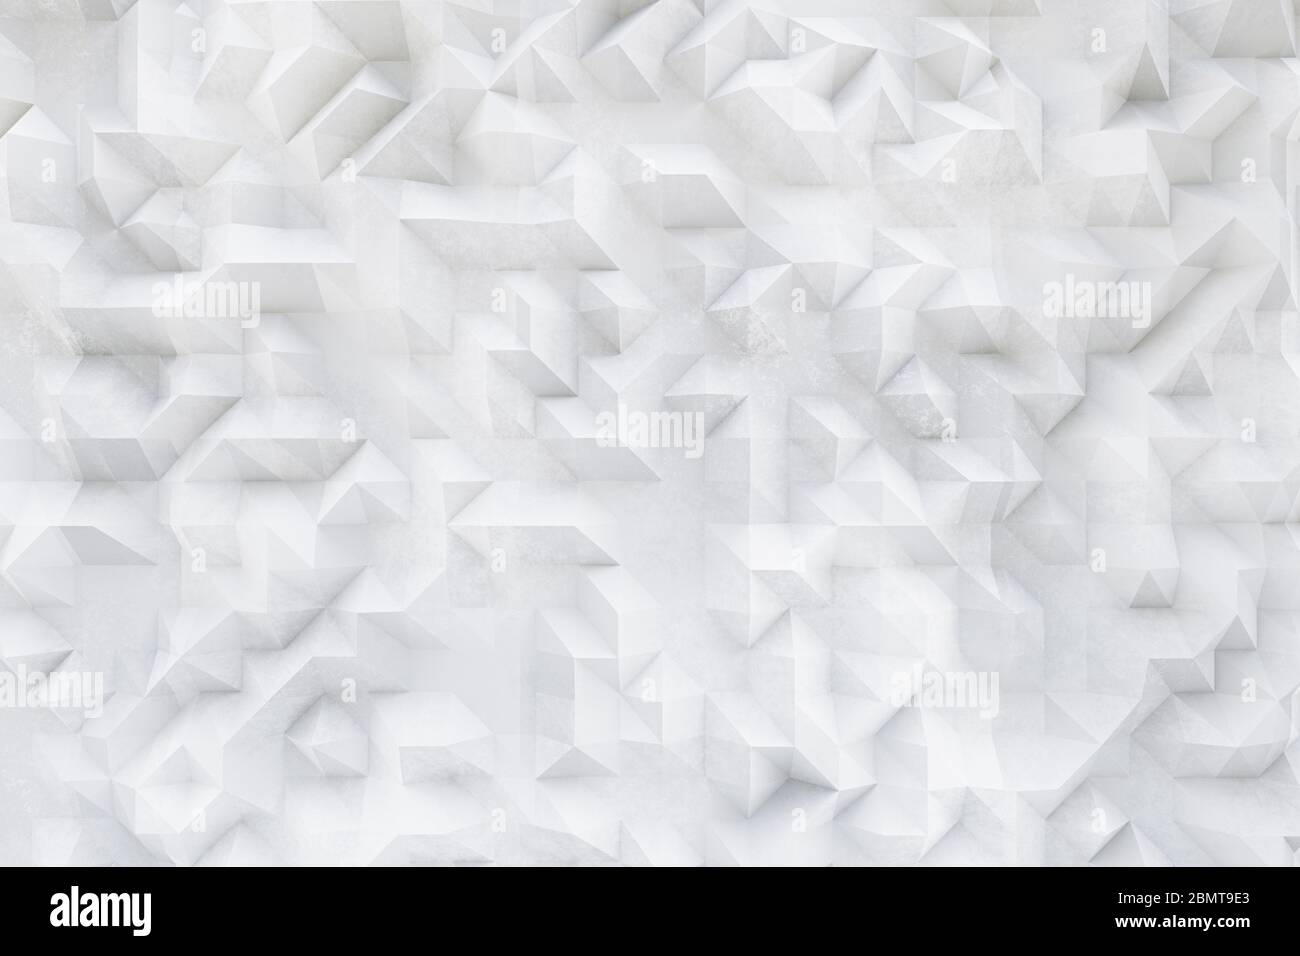 Calcestruzzo bianco 3D, disegno in gesso, strutture astratte asimmetriche e geometriche su sfondo testurizzato Foto Stock